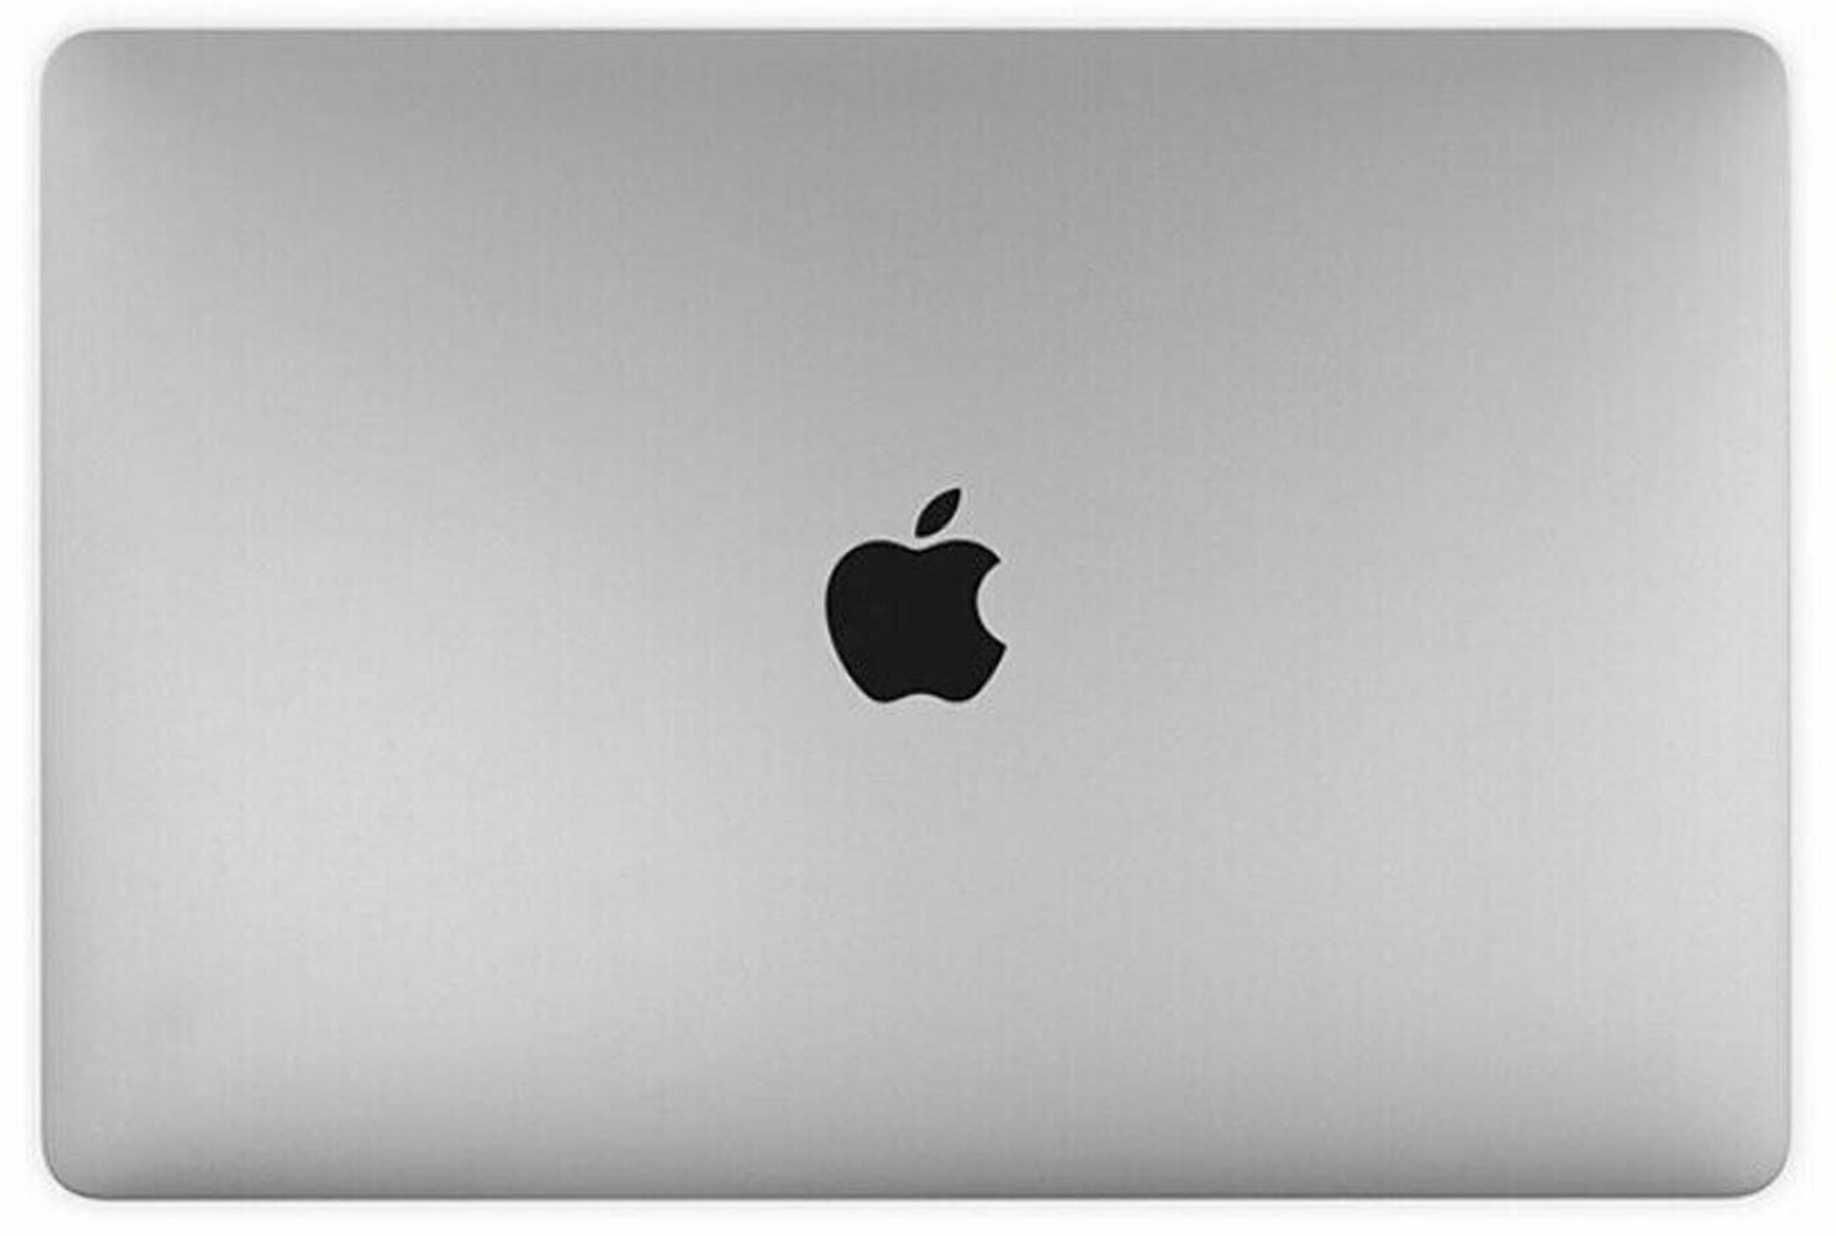 Display Macbook Air M1 A2337 space gray original